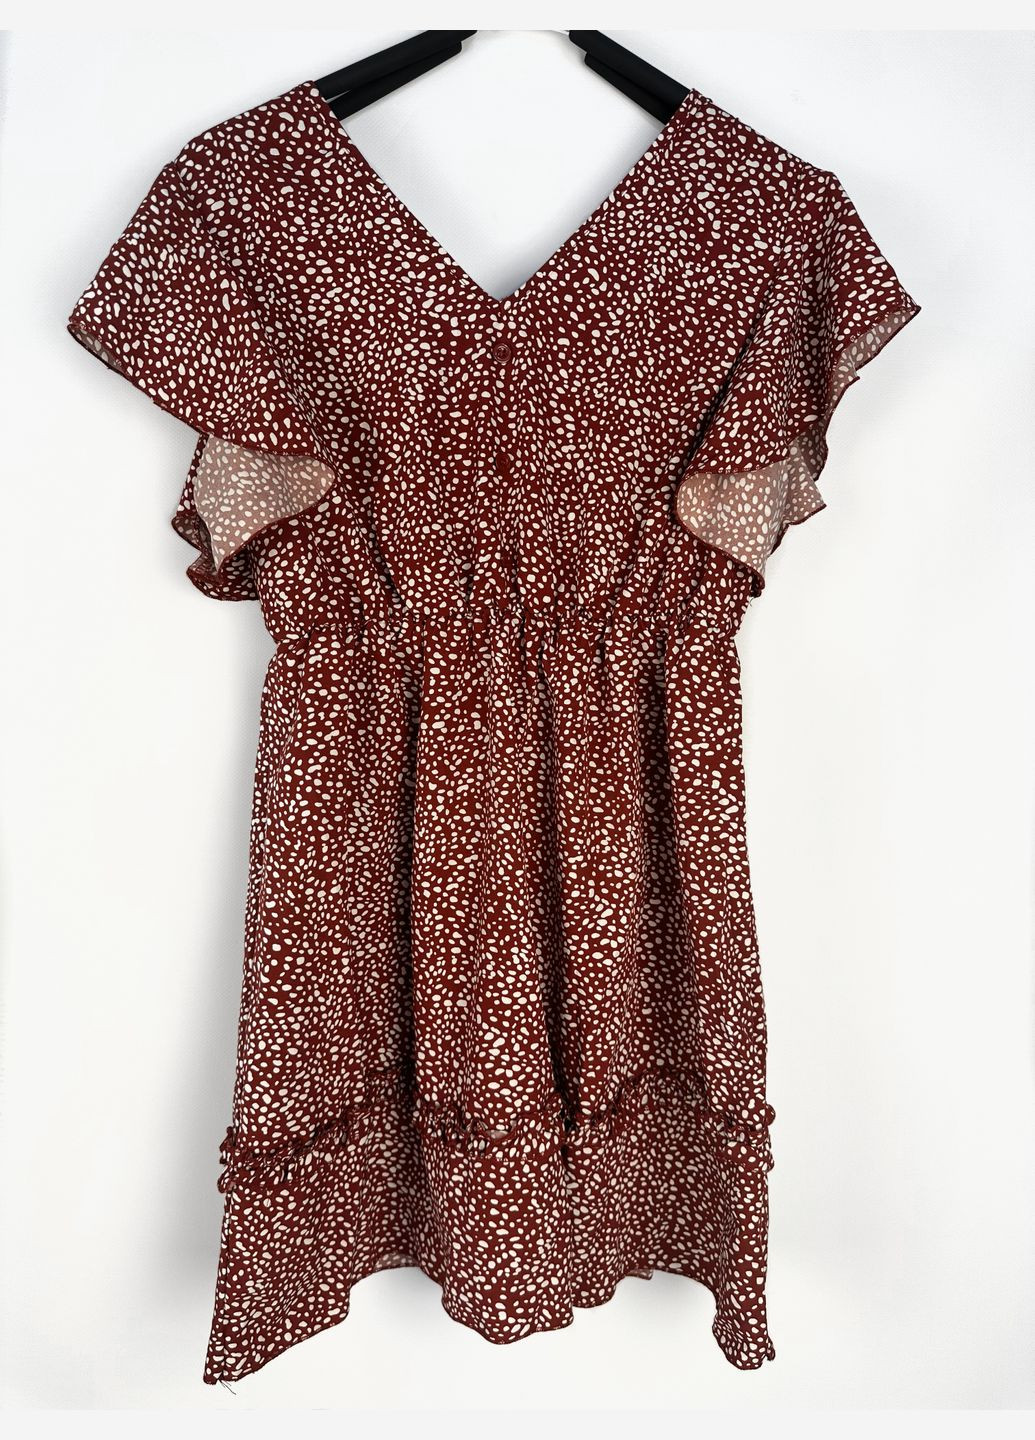 Комбинированное платье красная в белый горошек btg-0018 SHEIN